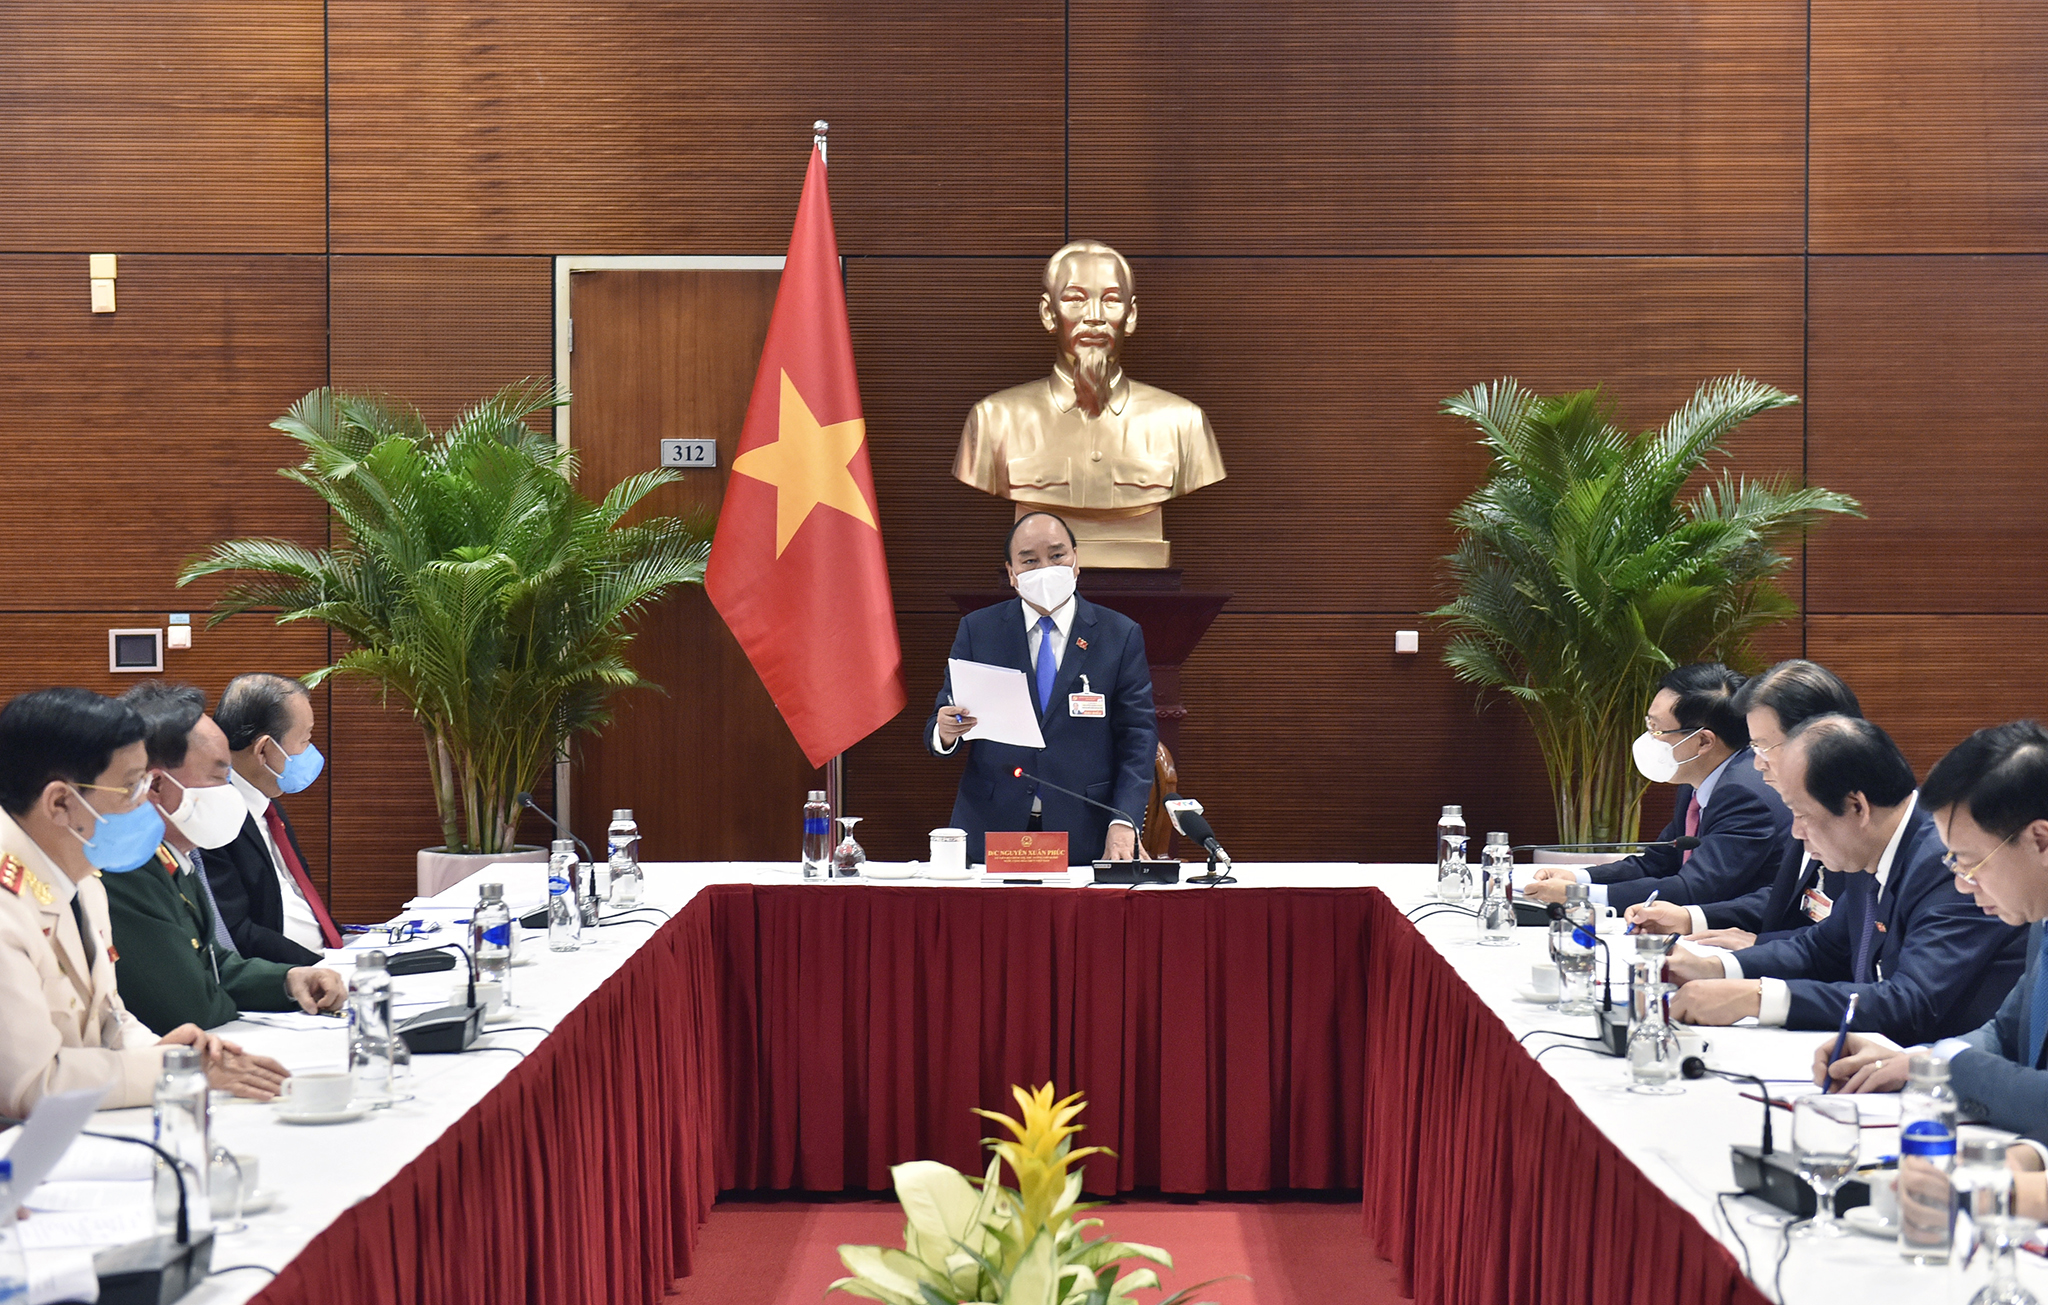 Thủ tướng Nguyễn Xuân Phúc triệu tập cuộc họp khẩn về công tác phòng chống COVID-19 tại phòng họp thuộc Trung tâm Hội nghị Quốc gia Mỹ Đình, nơi Đại hội XIII đang diễn ra.